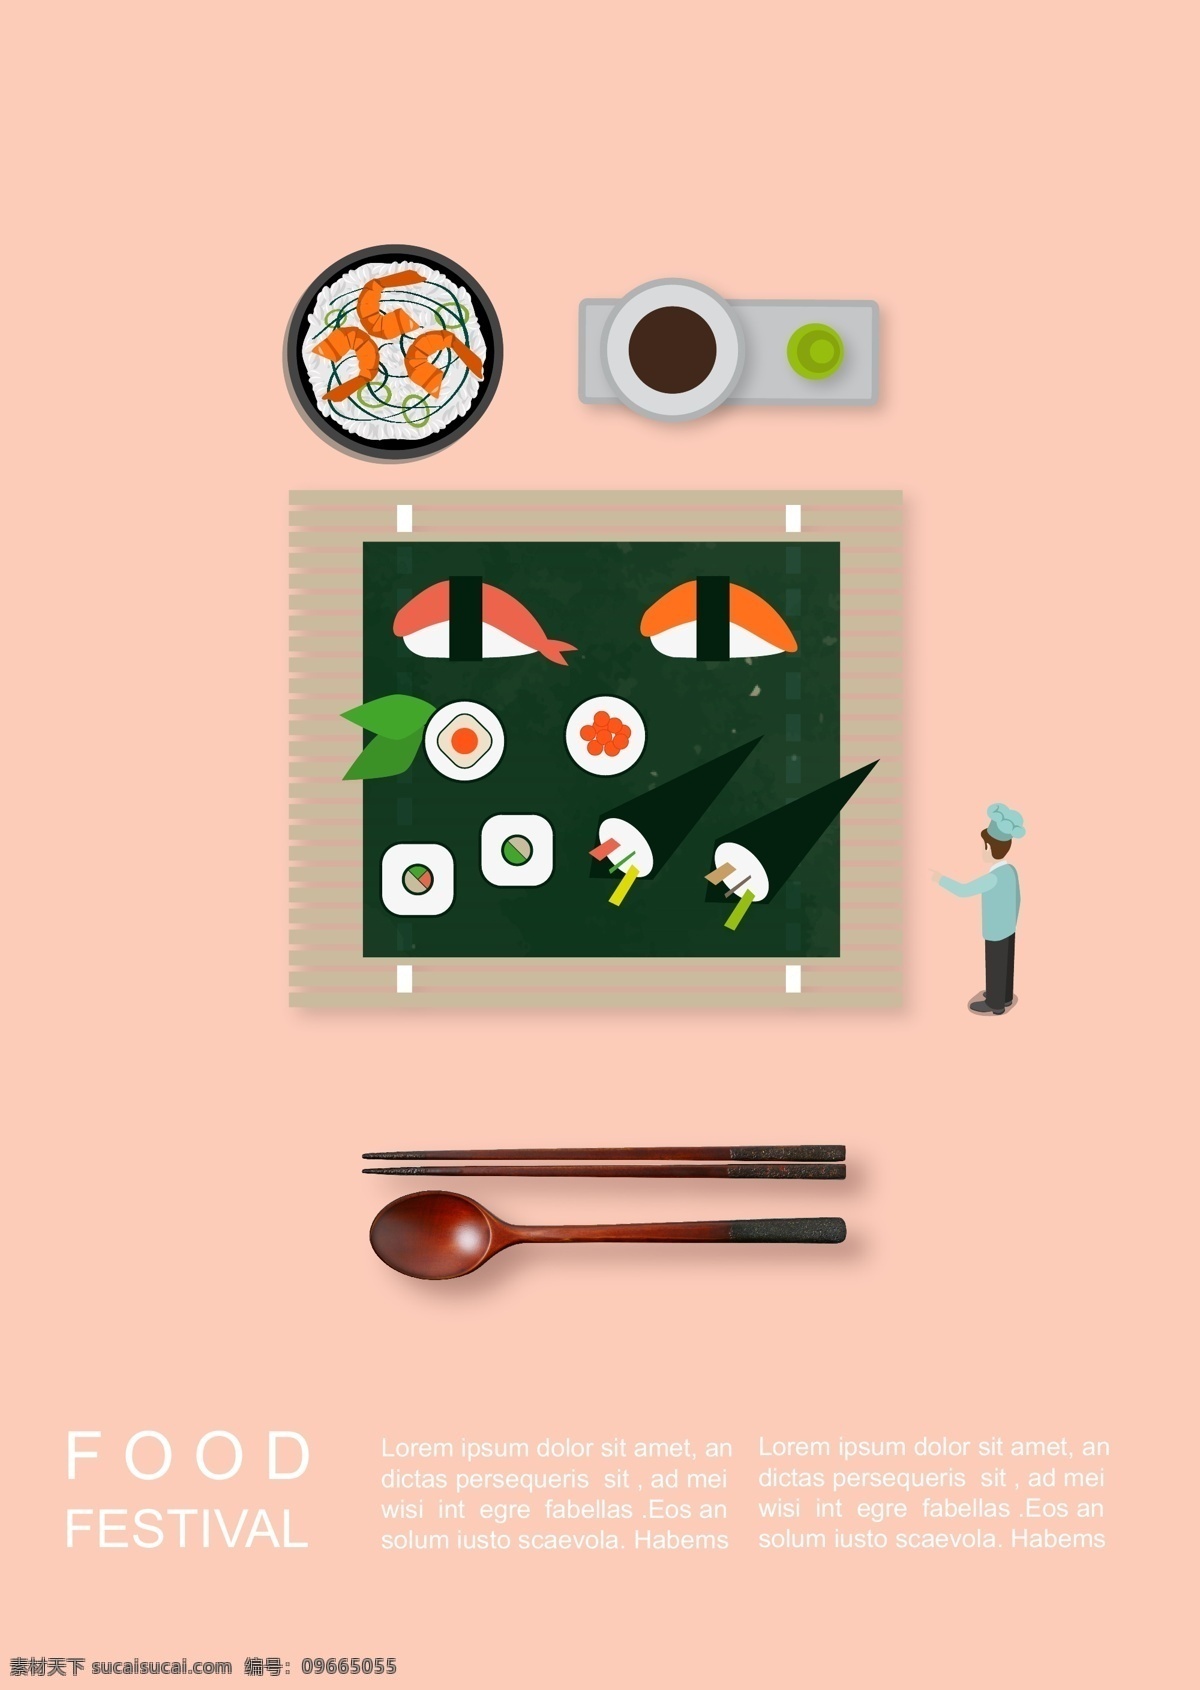 寿司 插图 可以 支持 托盘 肝脏药物 中国 天妇罗 苗圃 停 的数量 纯色 筷子 新鲜 海报 韩国风格 尖酸刻薄 腔